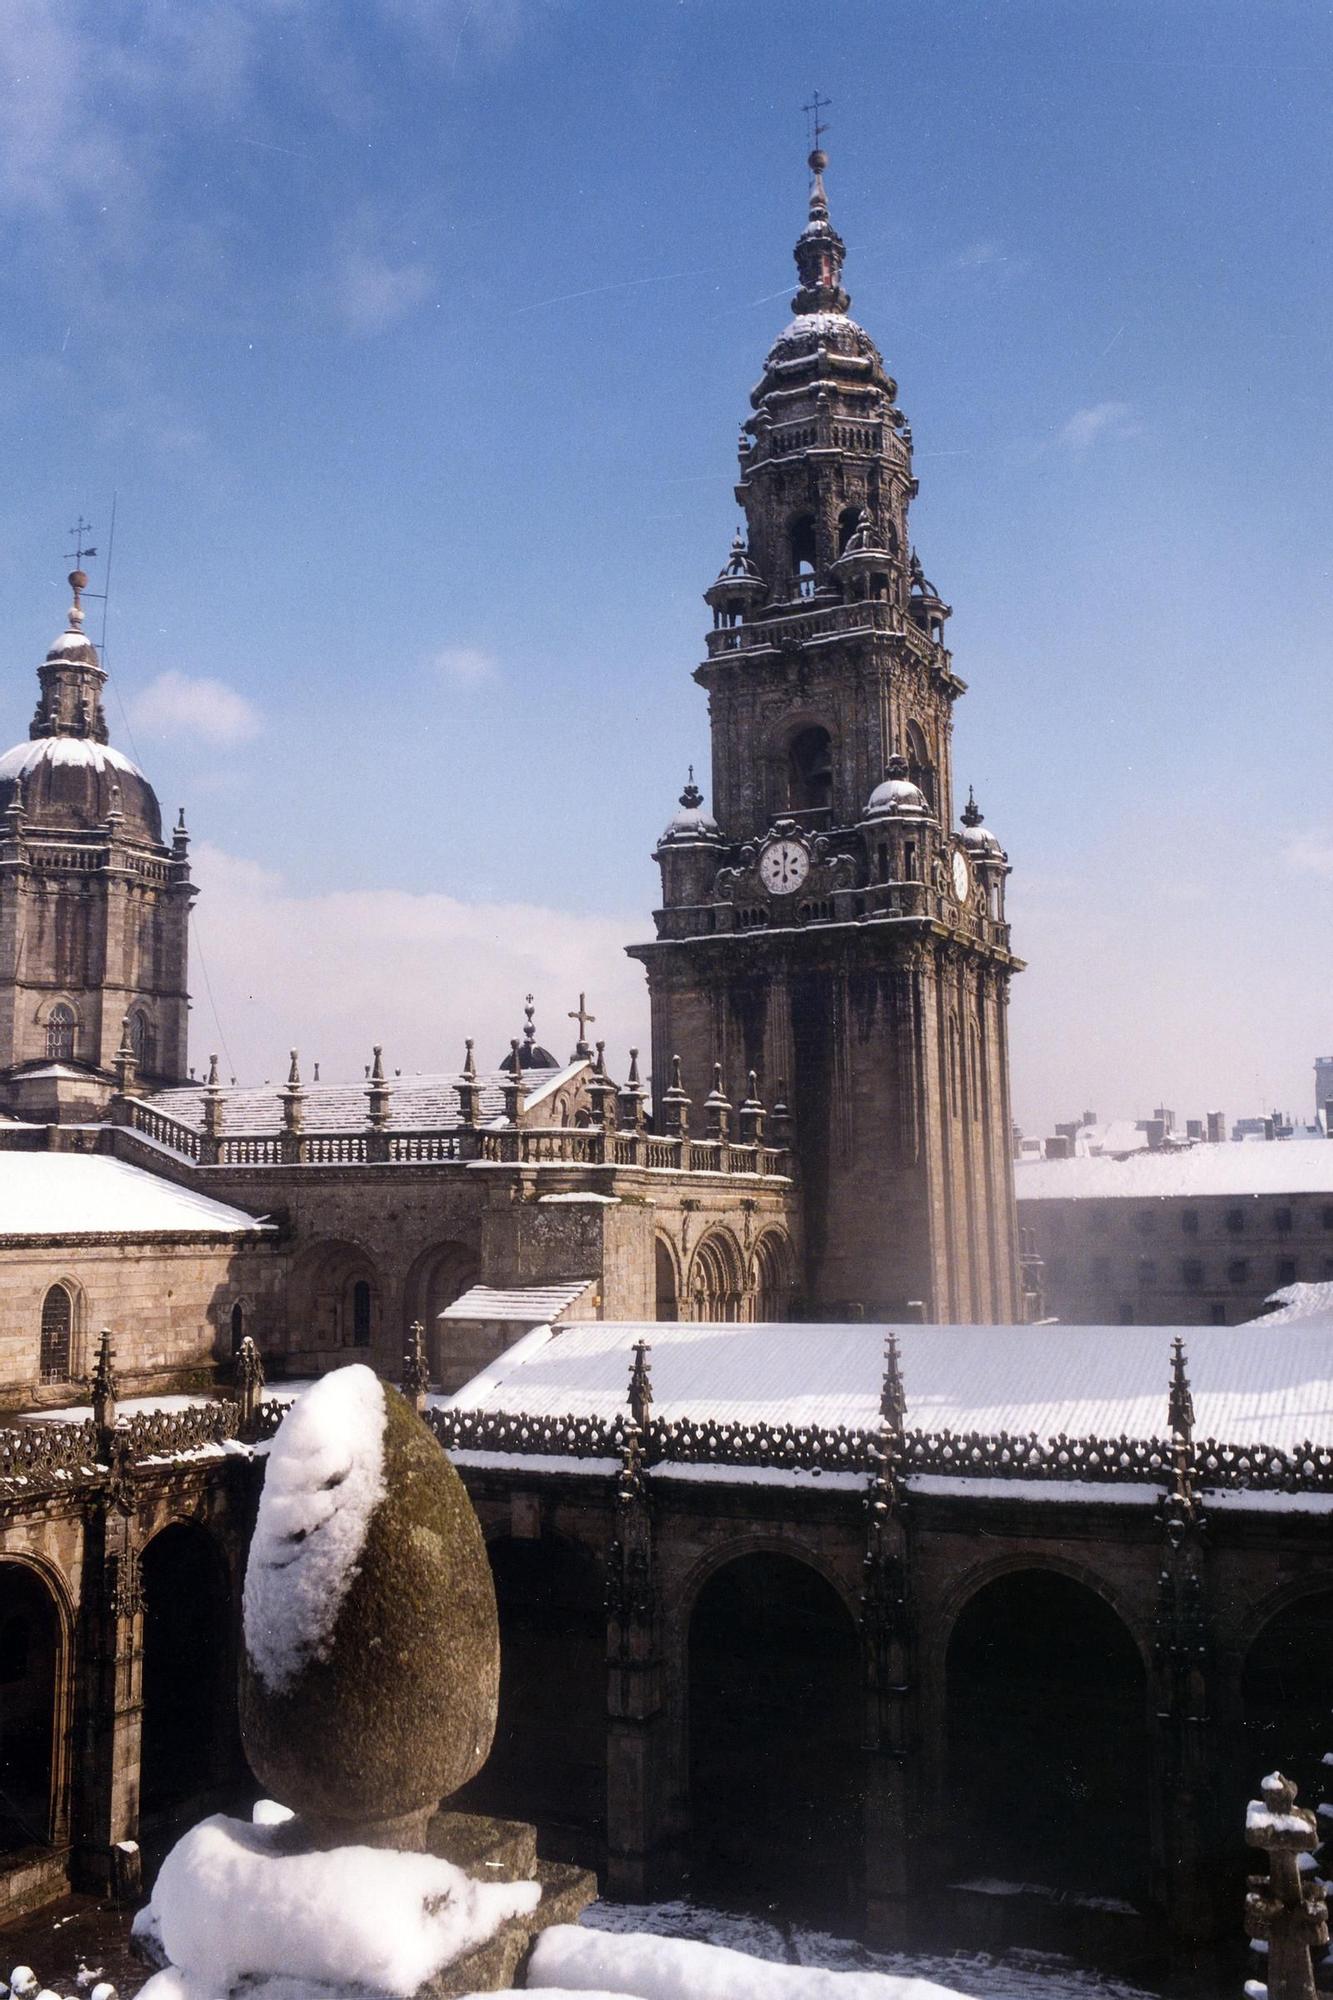 Octubre del 87: la otra gran nevada que pintó de blanco la Catedral de Santiago